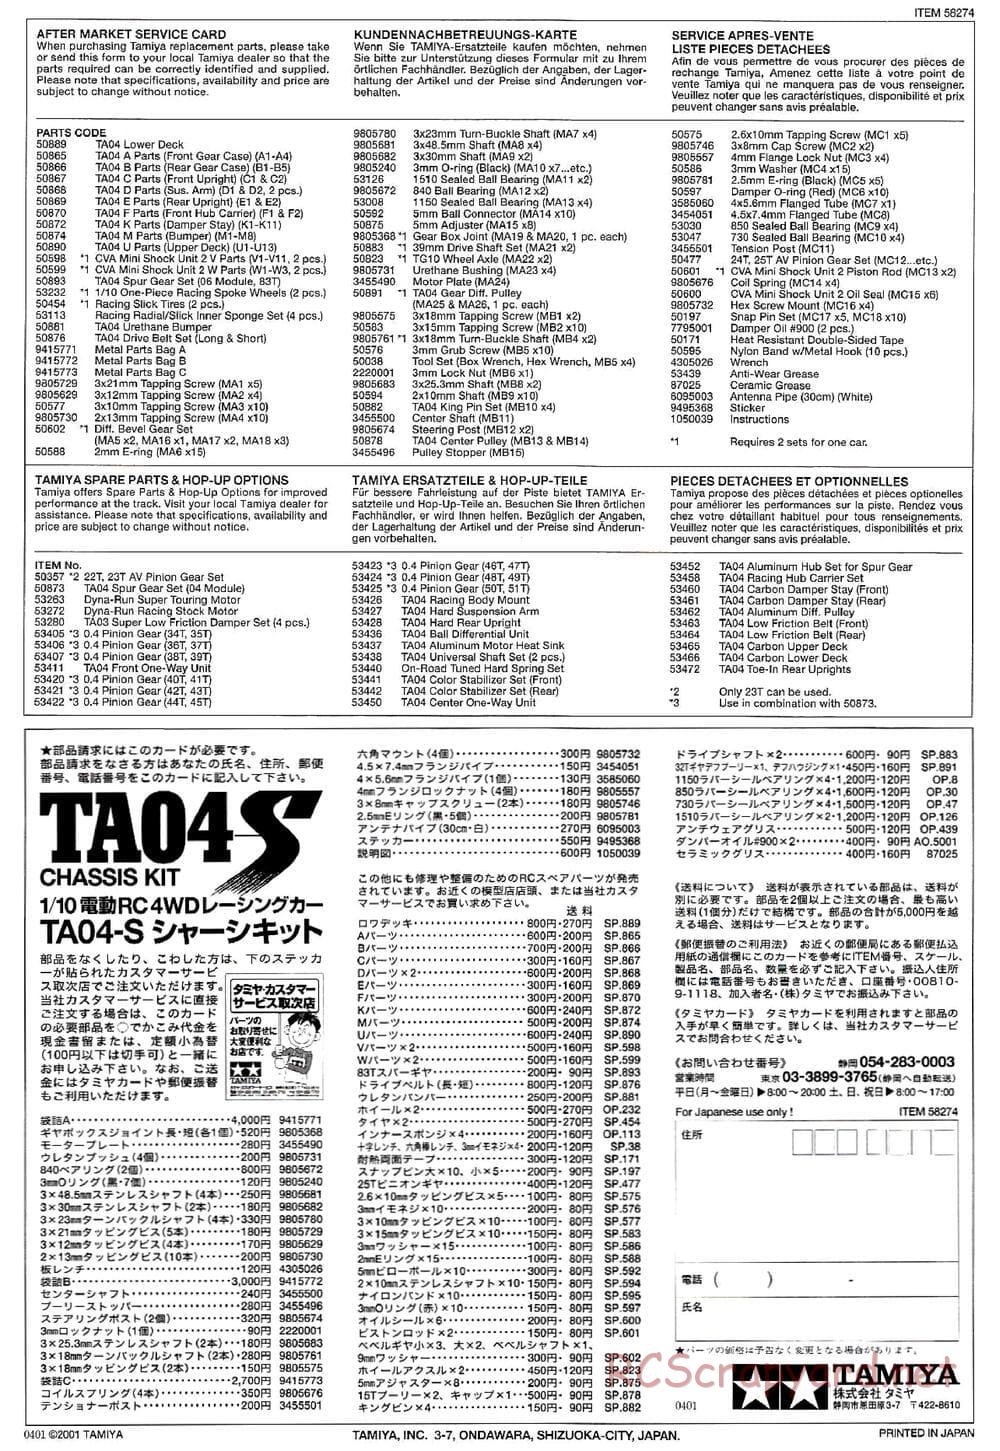 Tamiya - TA-04S Chassis - Manual - Page 25